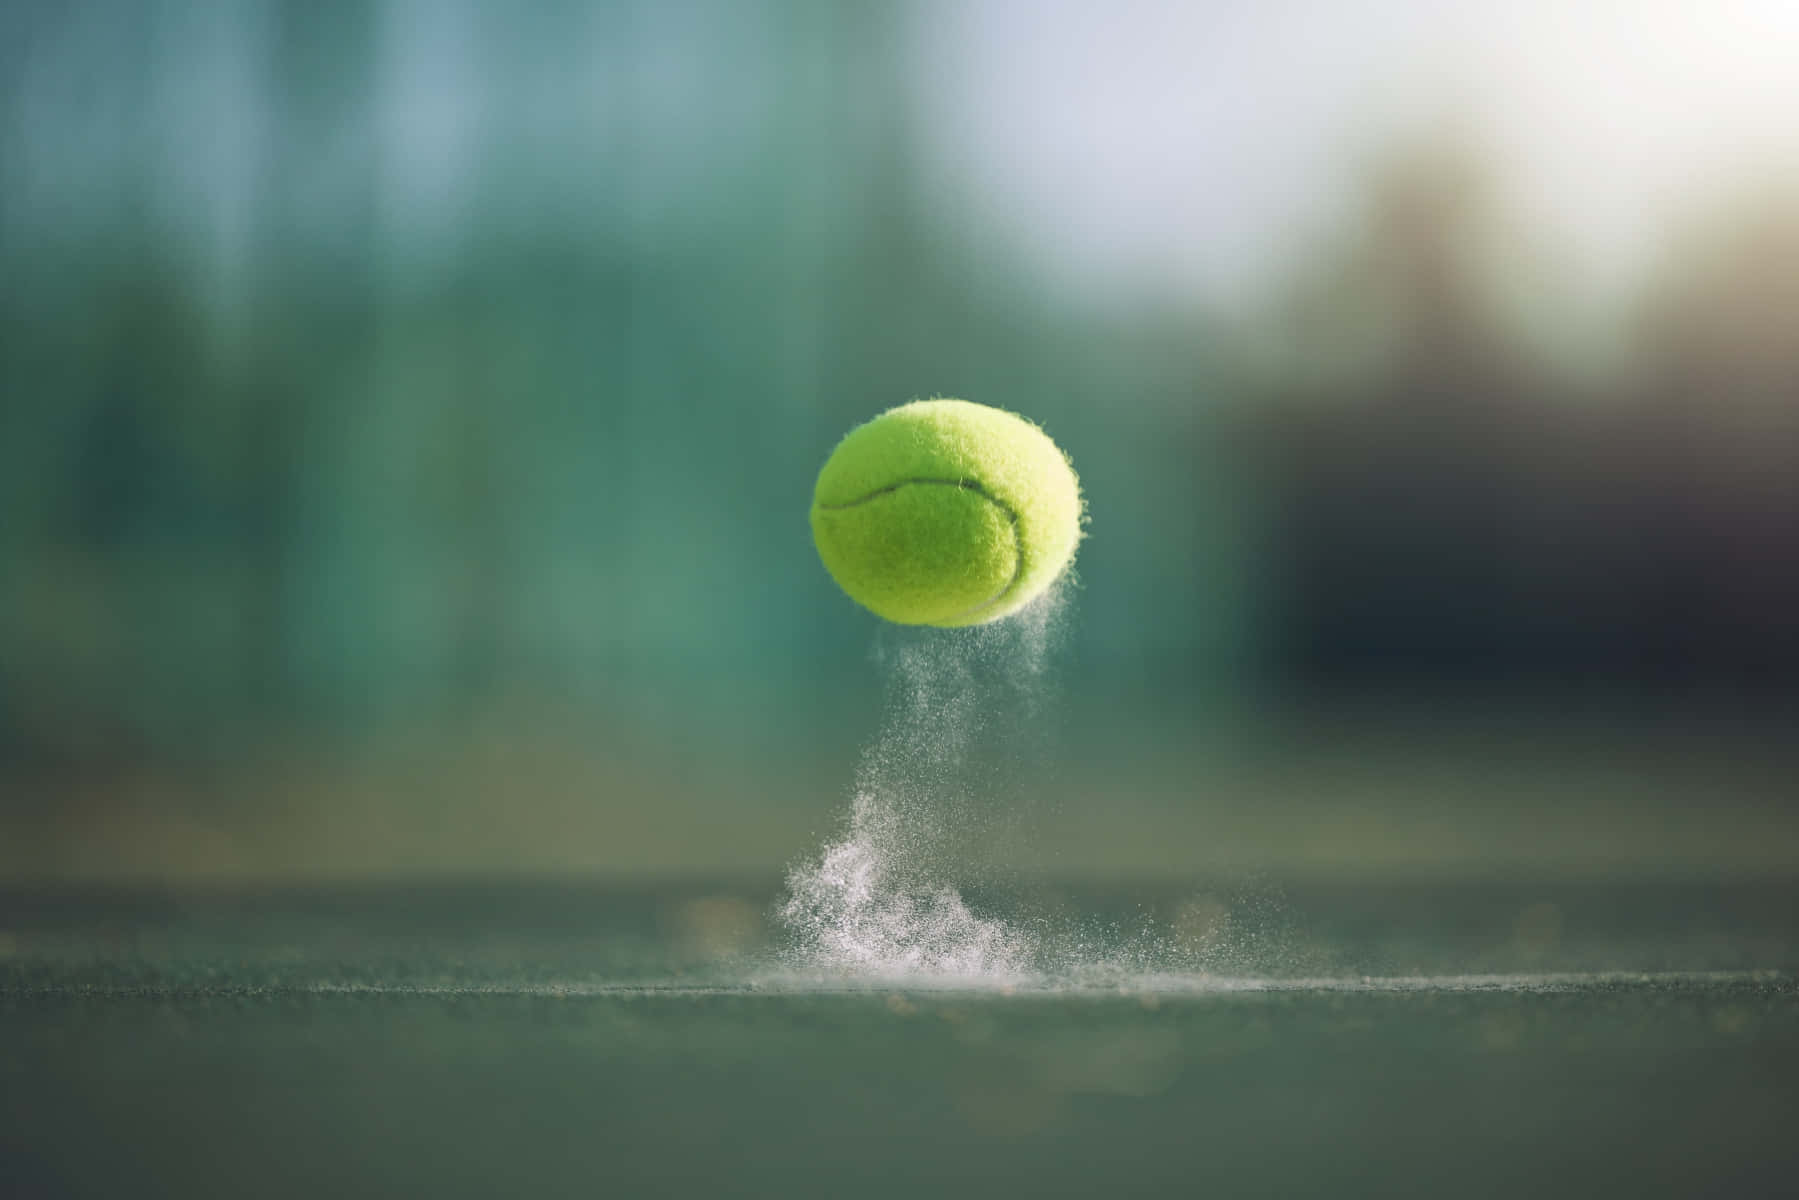 A tennis ball bouncing on a tennis court - Tennis